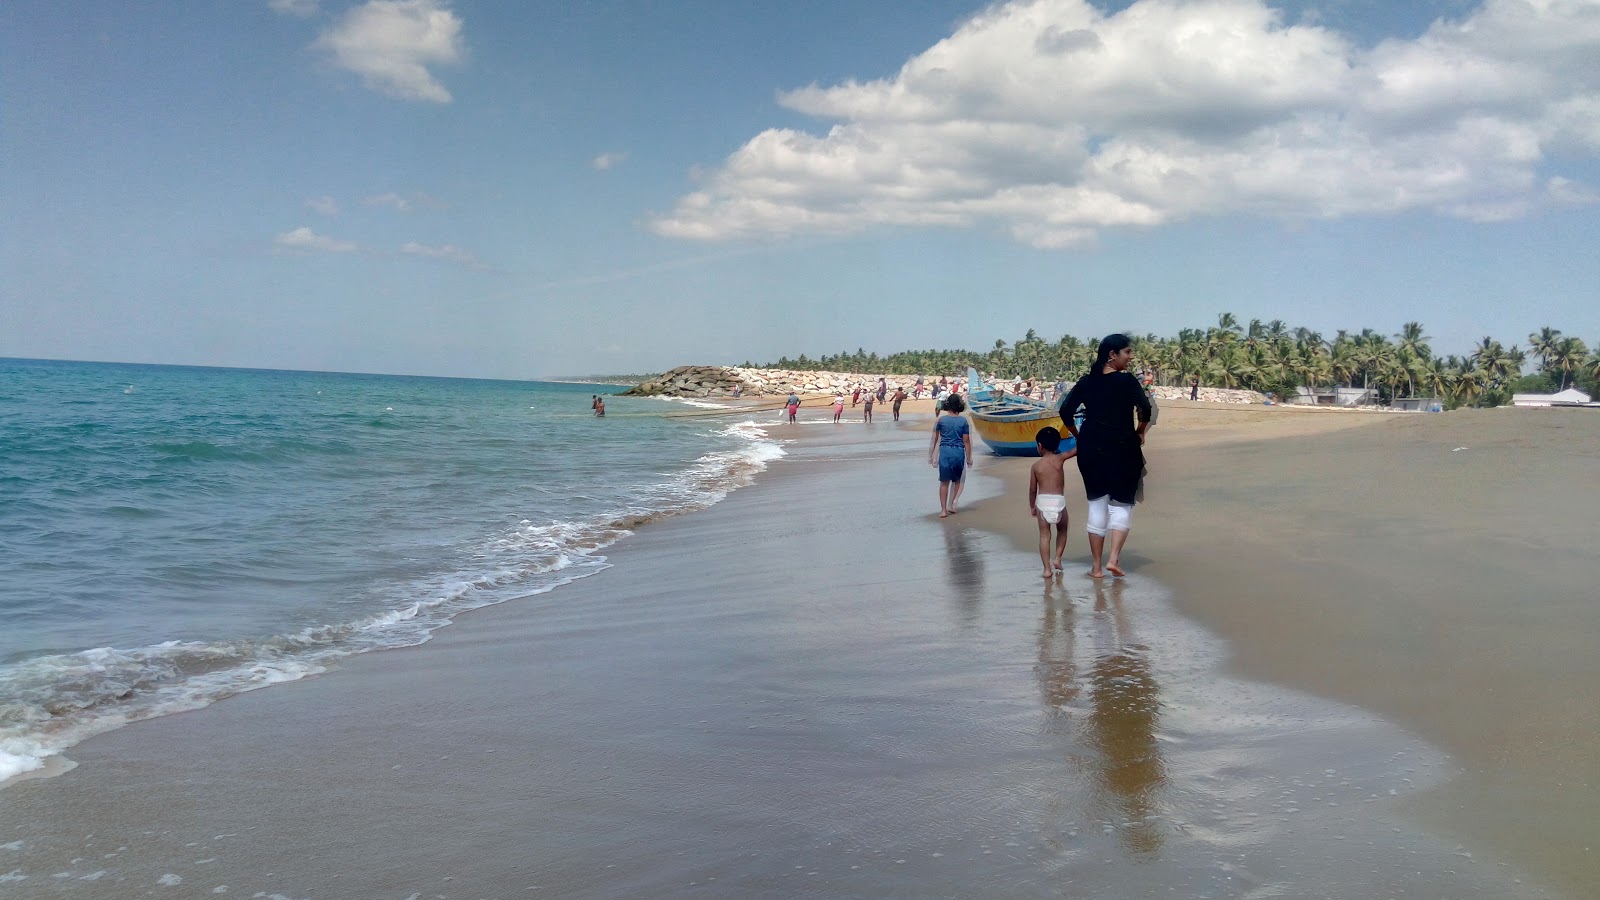 Perumathura Beach'in fotoğrafı geniş plaj ile birlikte